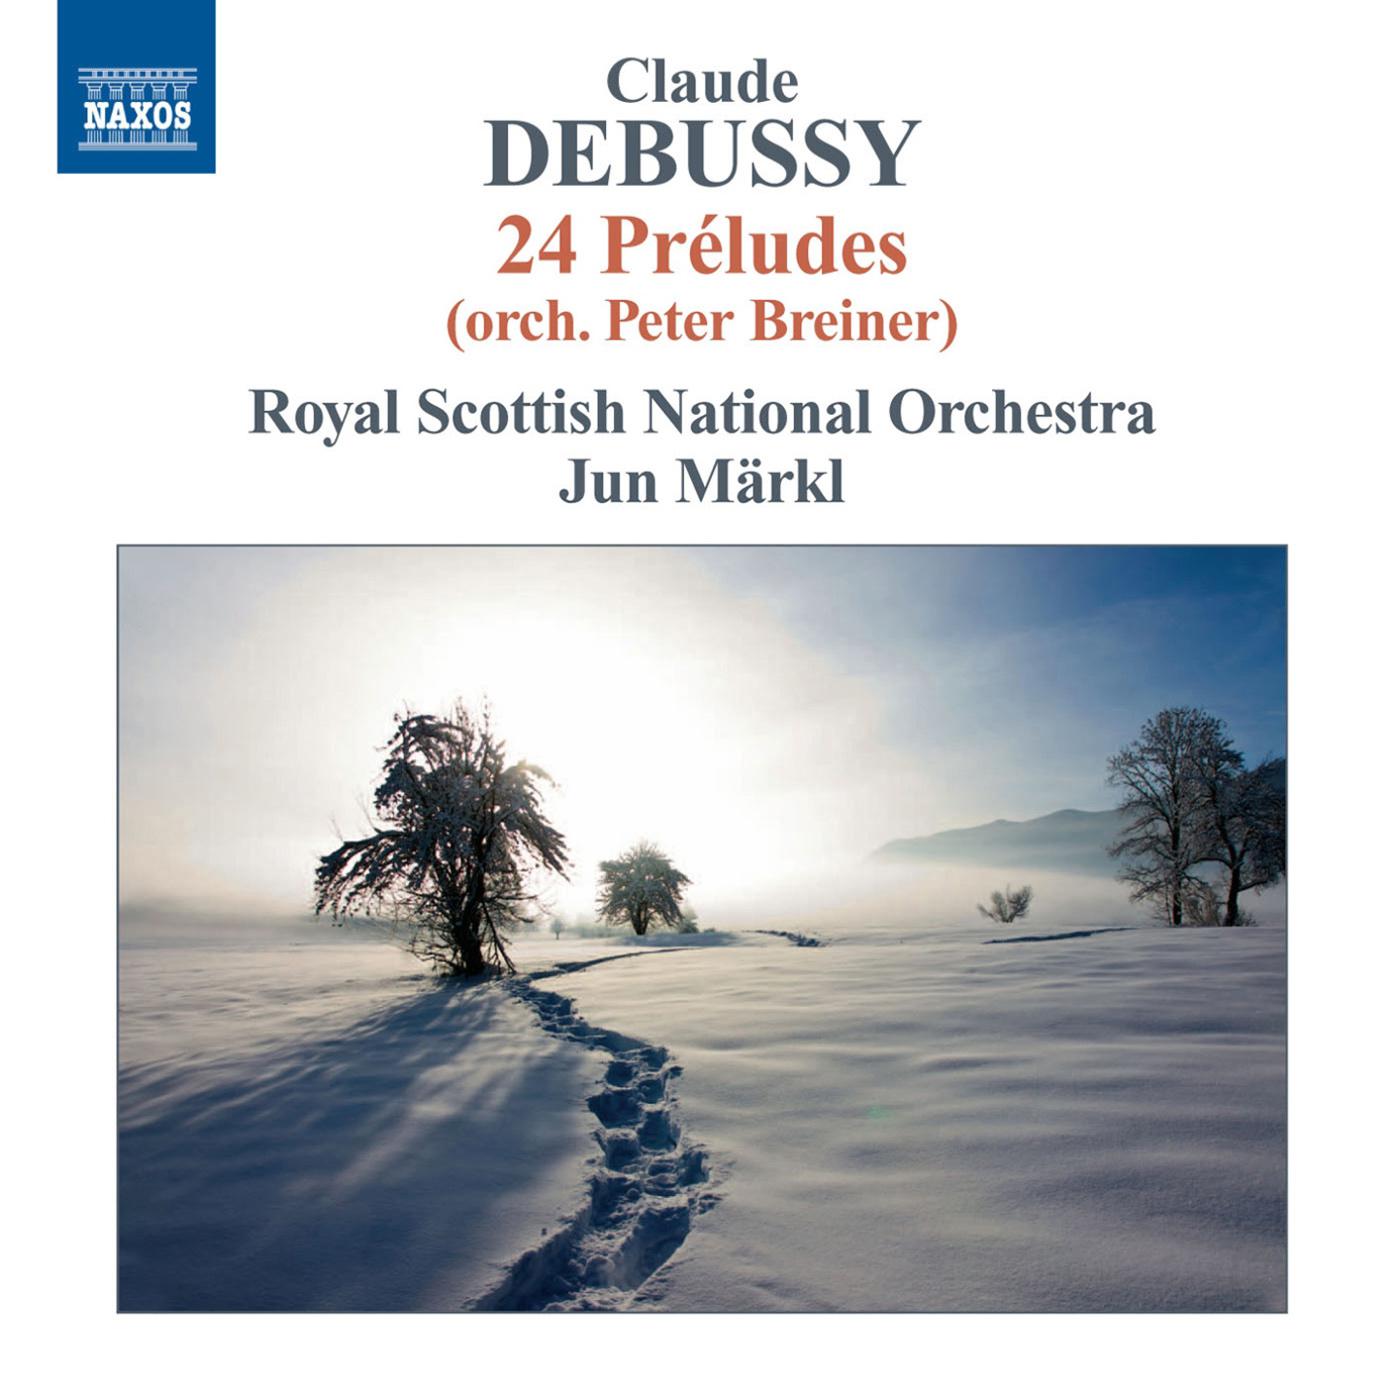 Preludes, Book 2 (arr. P. Breiner for orchestra): No. 7. La terrasse des audiences du clair de lune Preludes, Book 2 (arr. P. Breiner for orchestra)